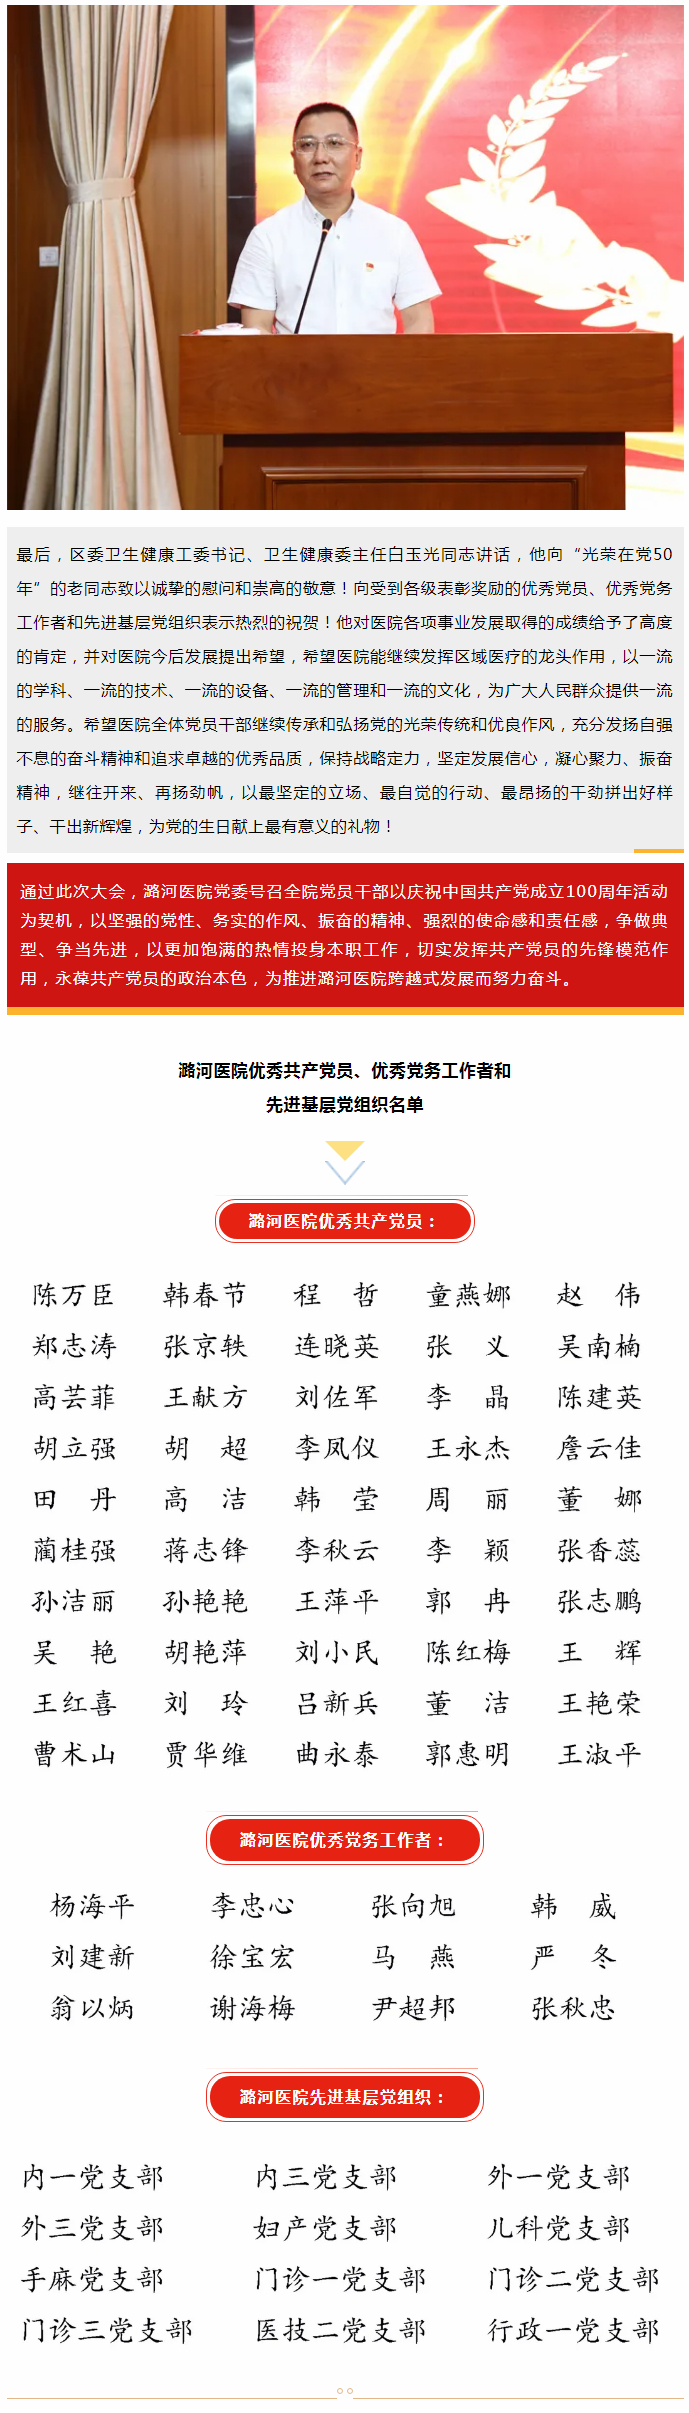 6-25 潞河医院召开庆祝中国共产党成立100周年大会--2.jpg